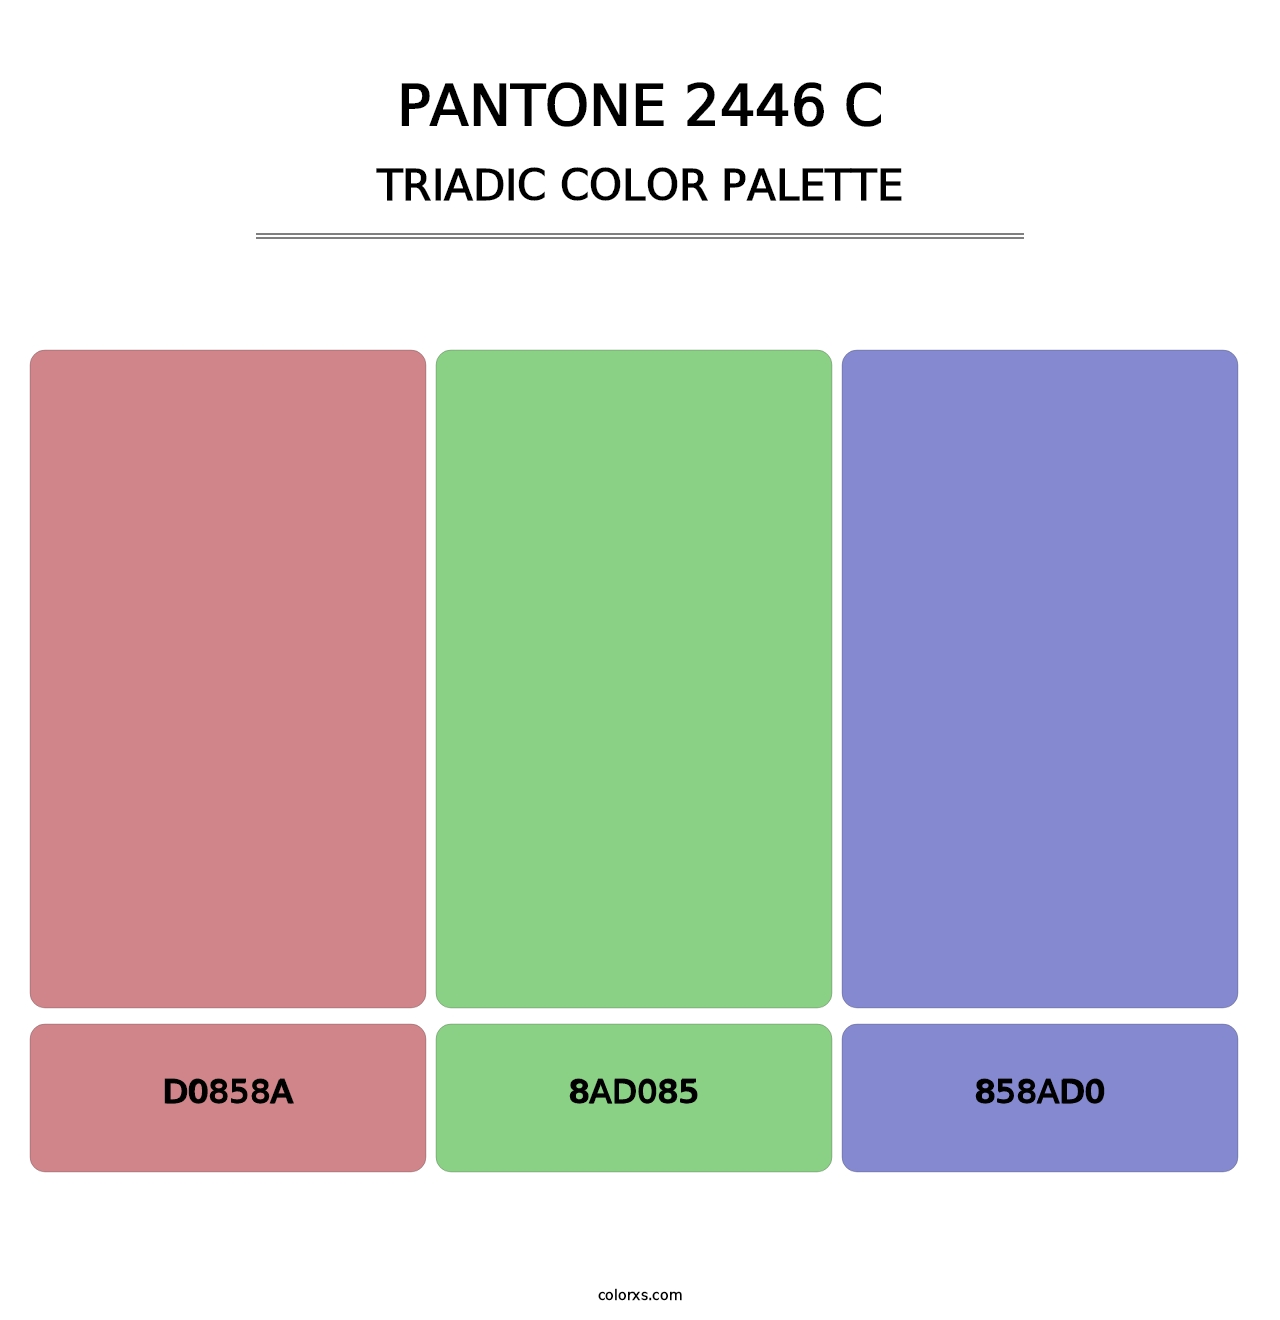 PANTONE 2446 C - Triadic Color Palette